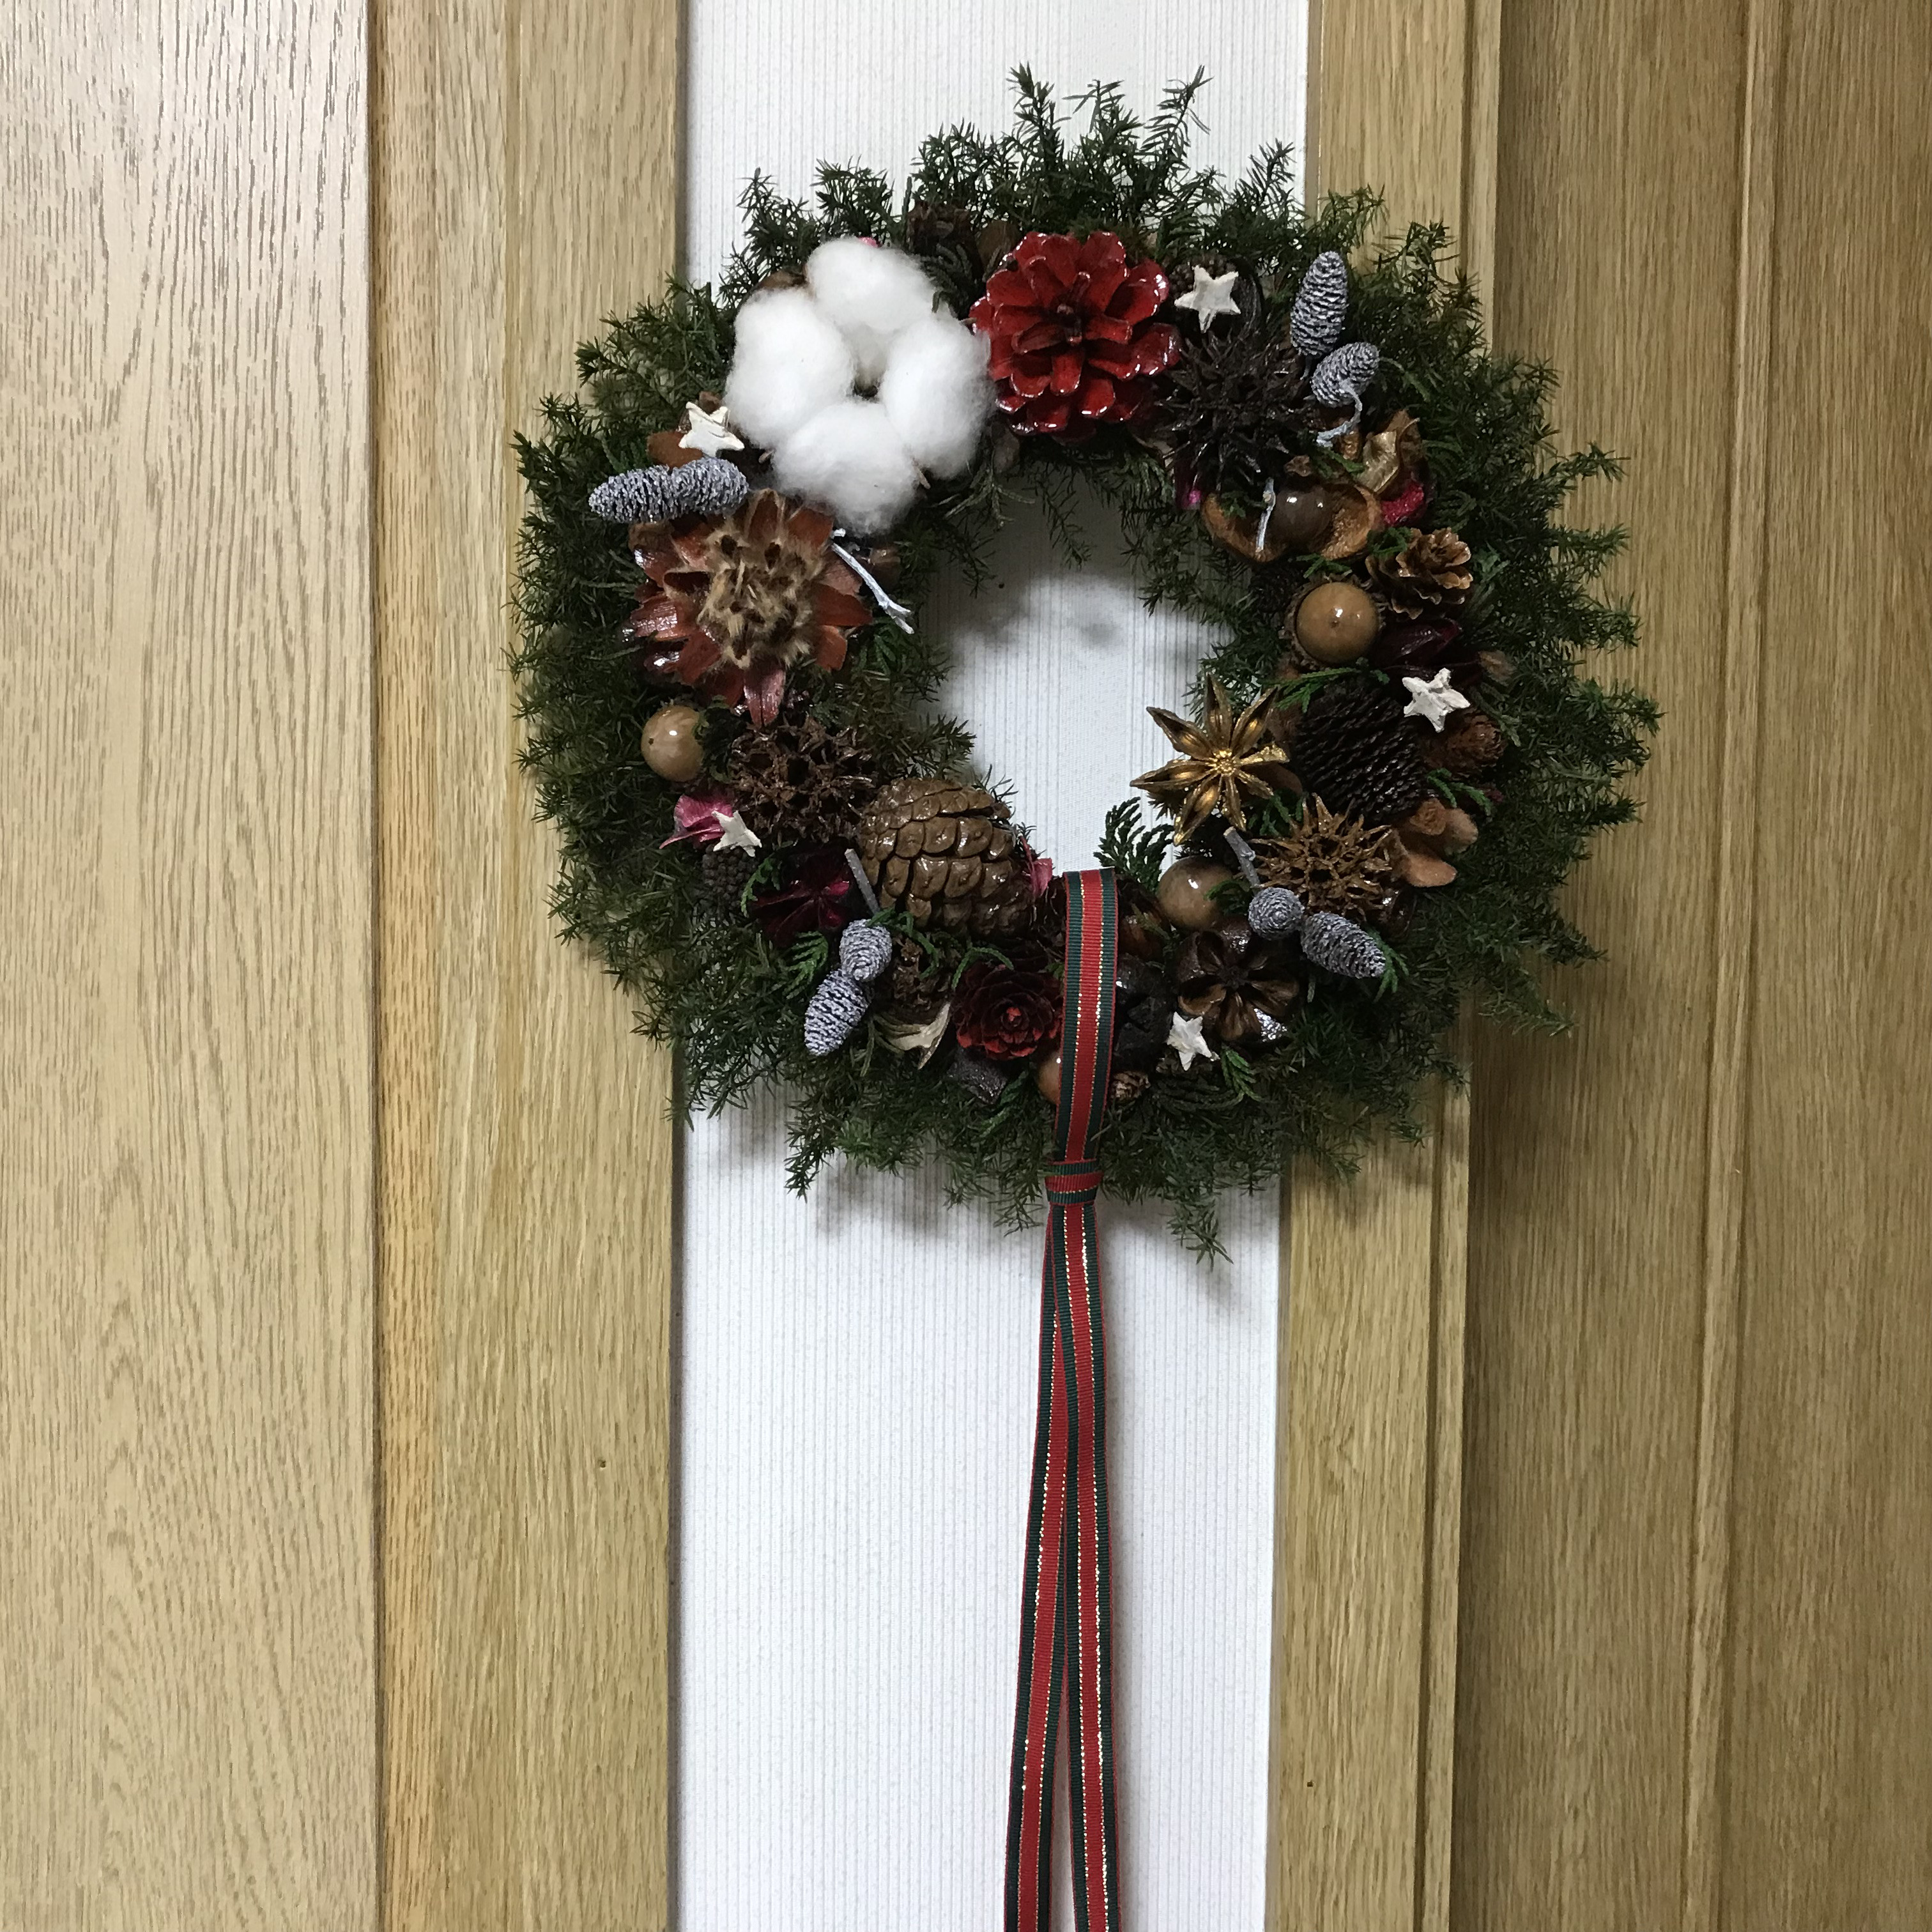 〜和室に針葉樹香るクリスマスリース〜 Xmas wreathe